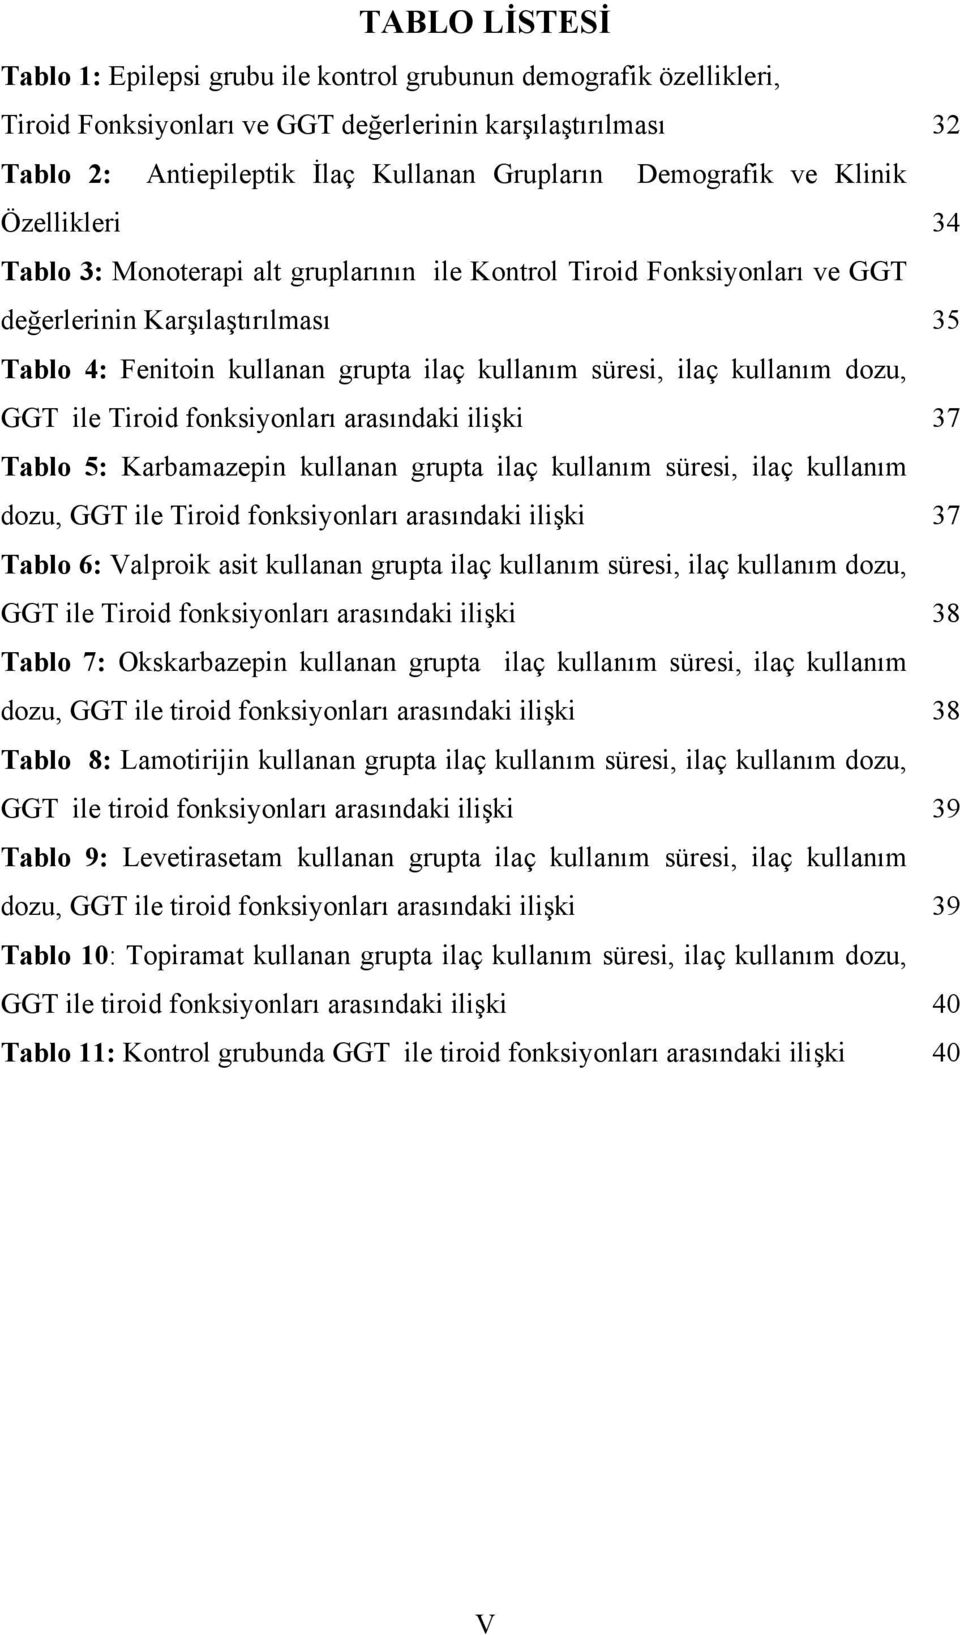 dozu, GGT ile Tiroid fonksiyonları arasındaki ilişki Tablo 5: Karbamazepin kullanan grupta ilaç kullanım süresi, ilaç kullanım dozu, GGT ile Tiroid fonksiyonları arasındaki ilişki Tablo 6: Valproik